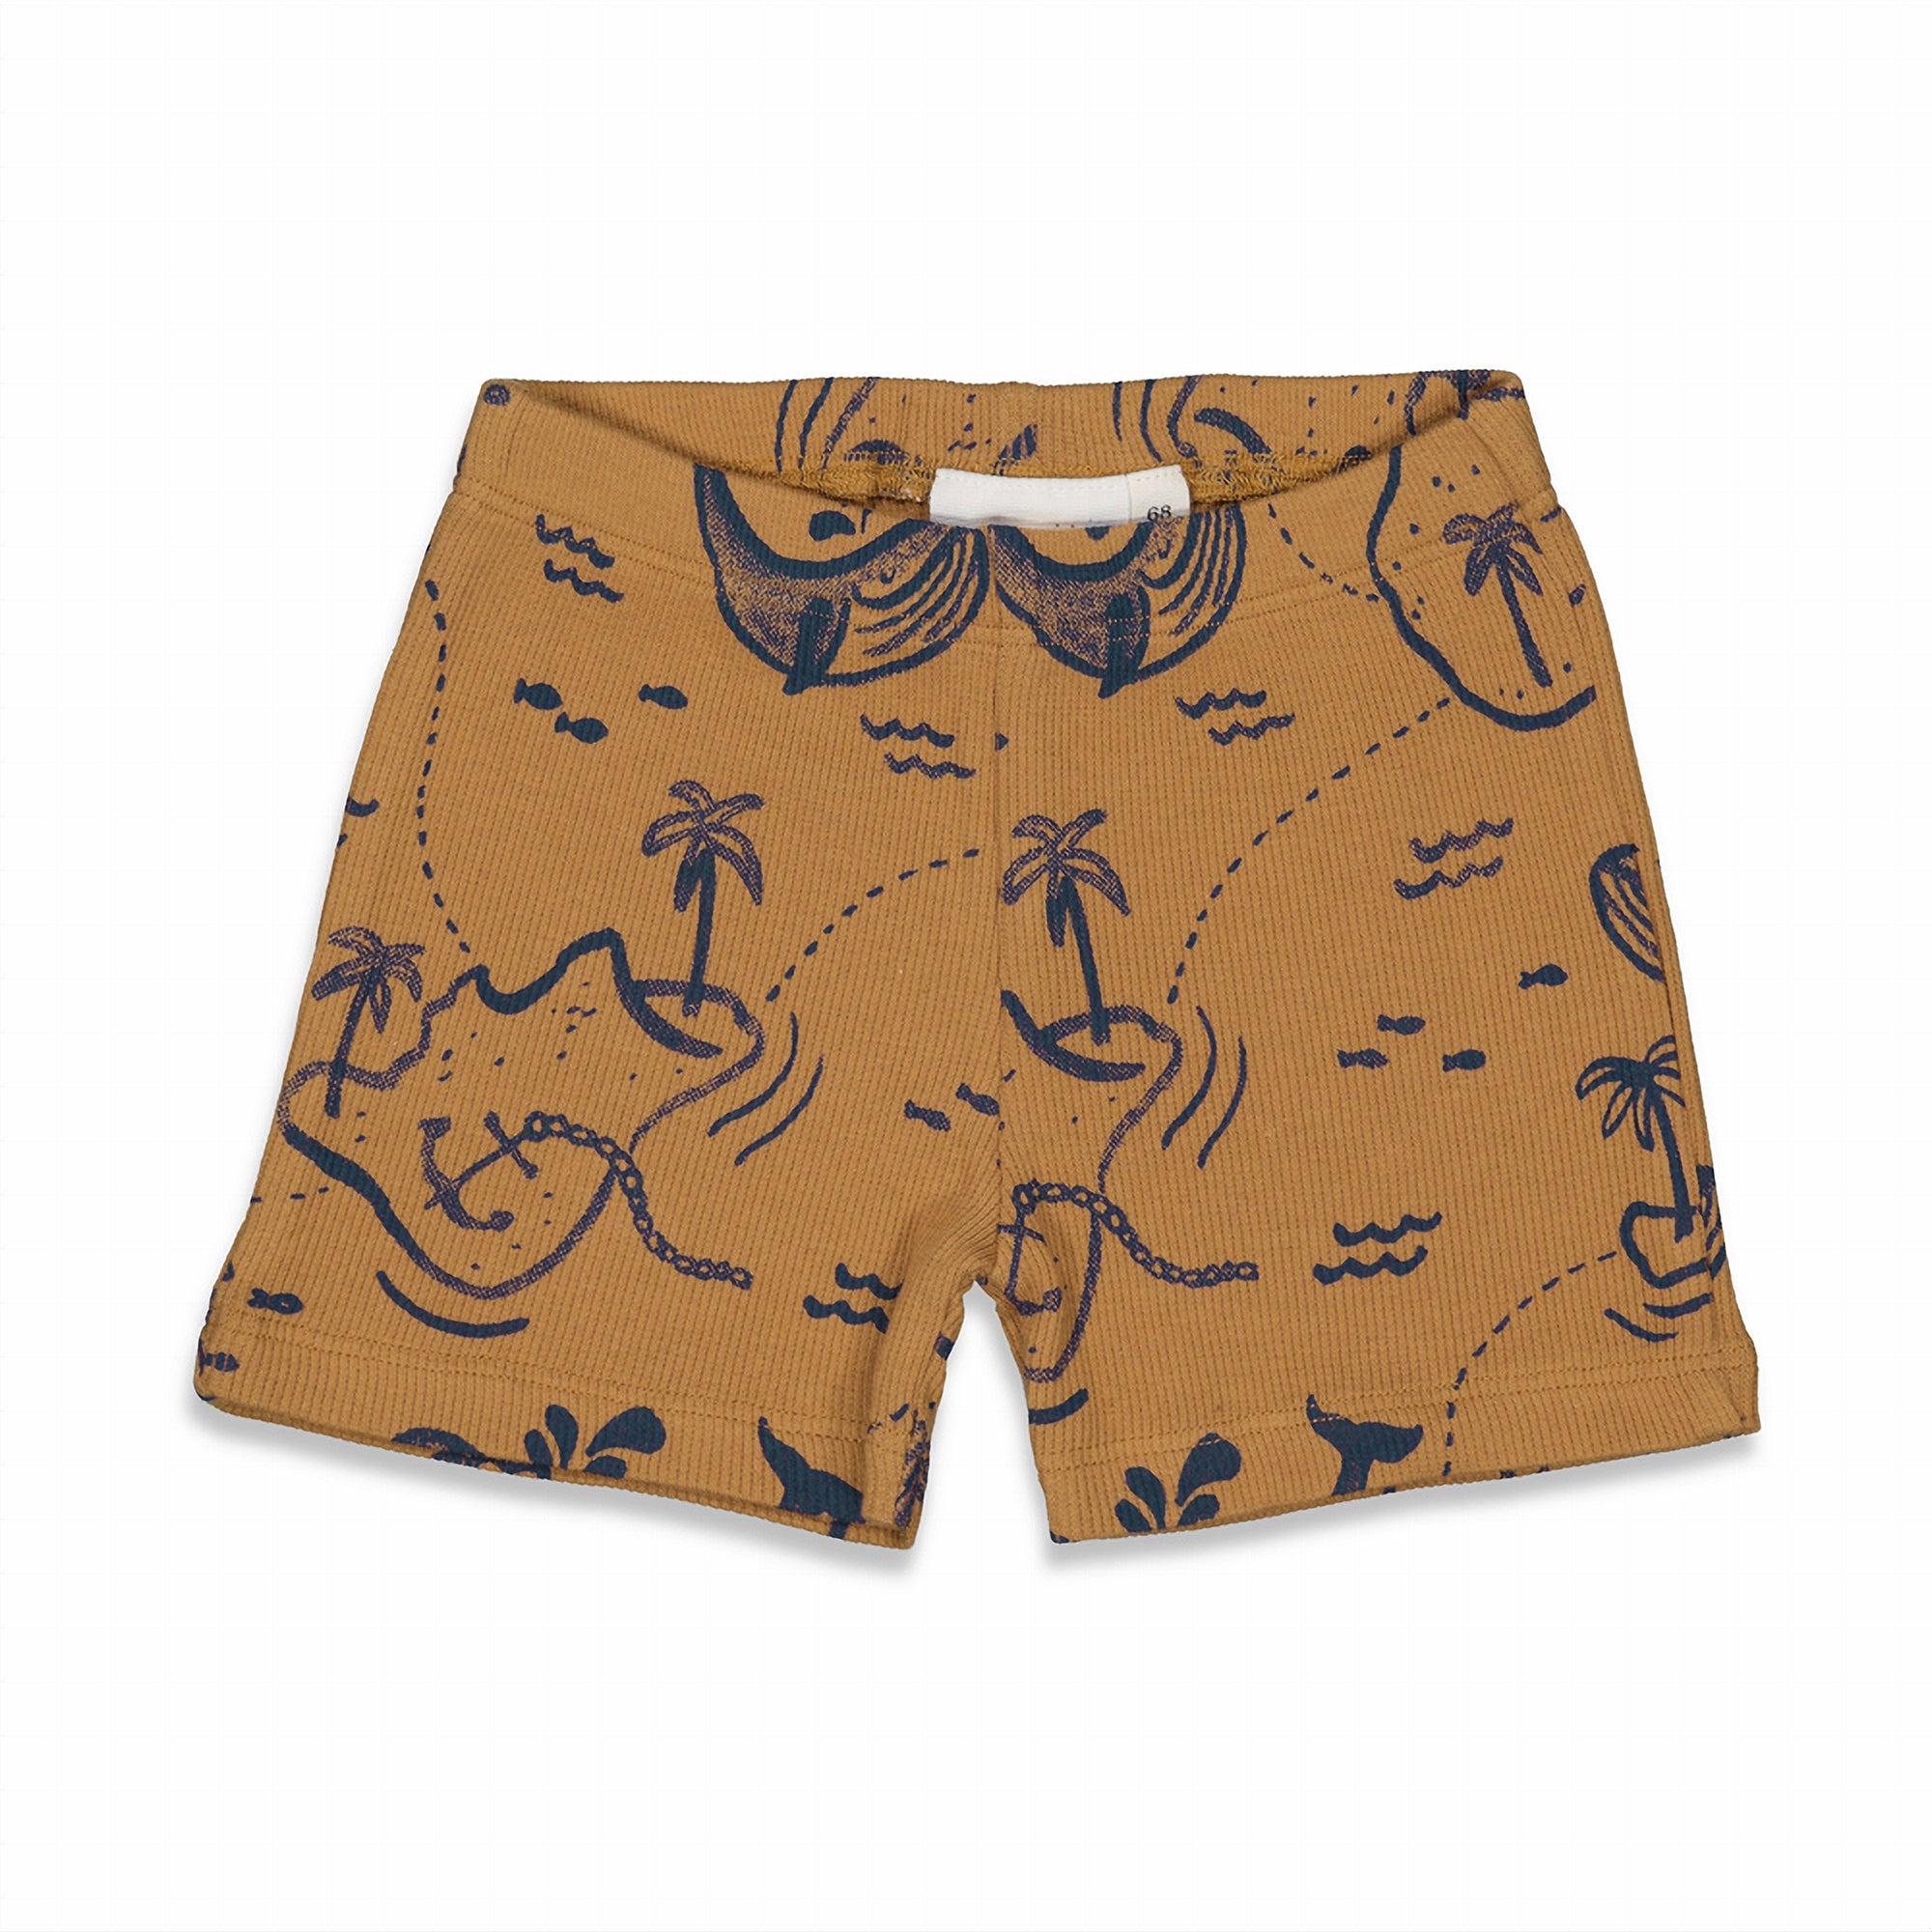 Jongens Wally Whale - Premium Summerwear by FEETJE van Feetje in de kleur Camel in maat 86.